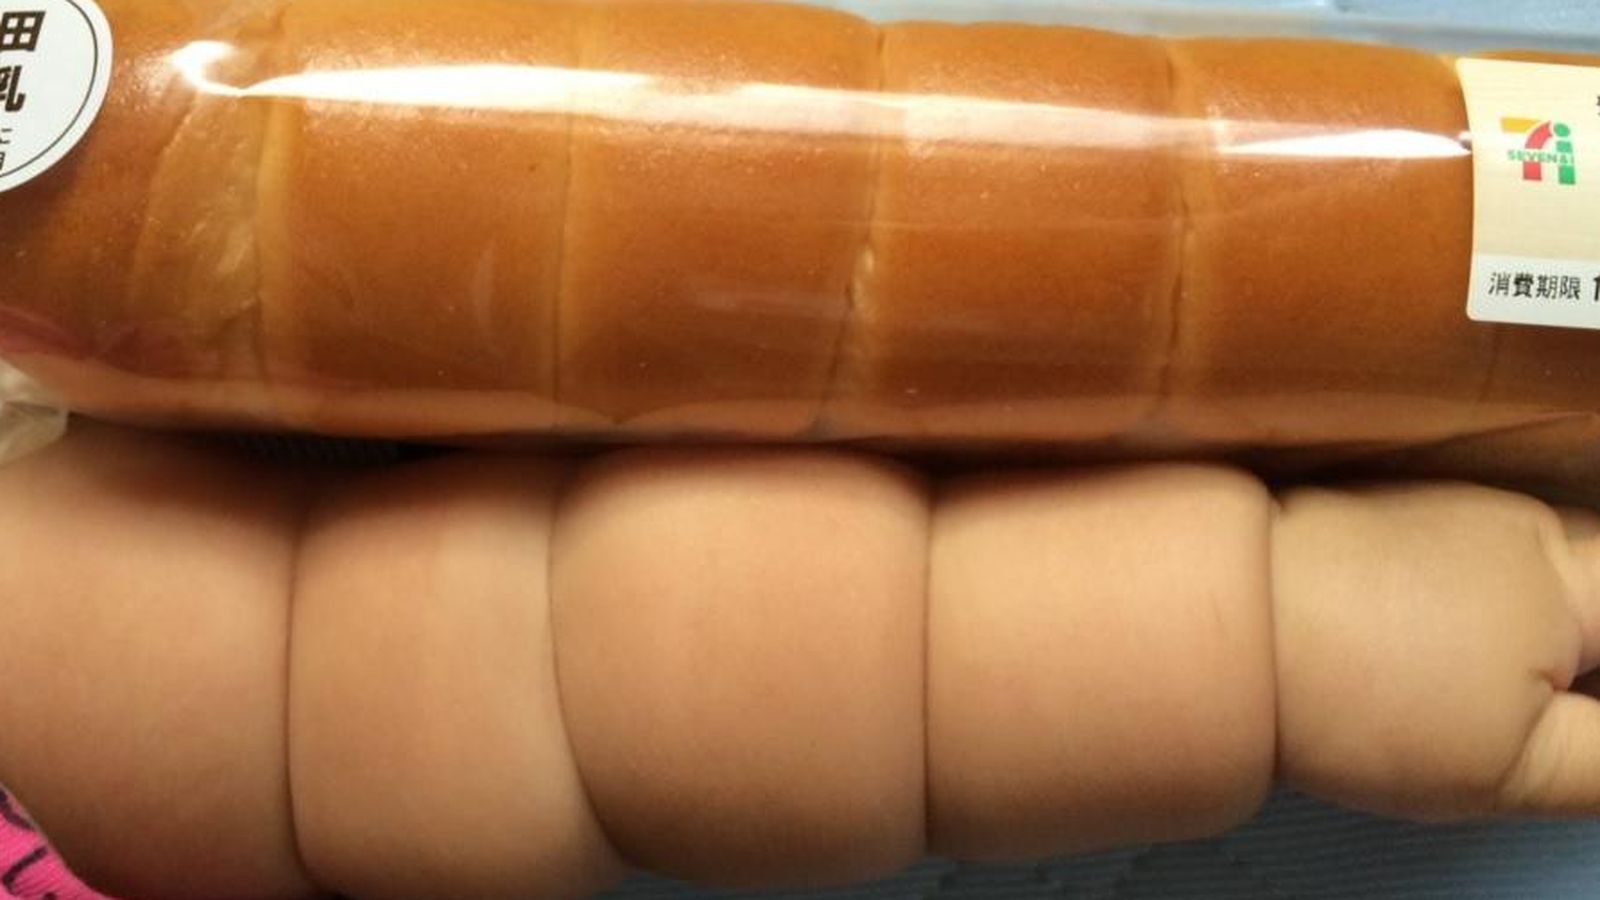 Foto: Una de las fotos que comparan barras de pan con brazos de bebés (Twitter/@JGakt)